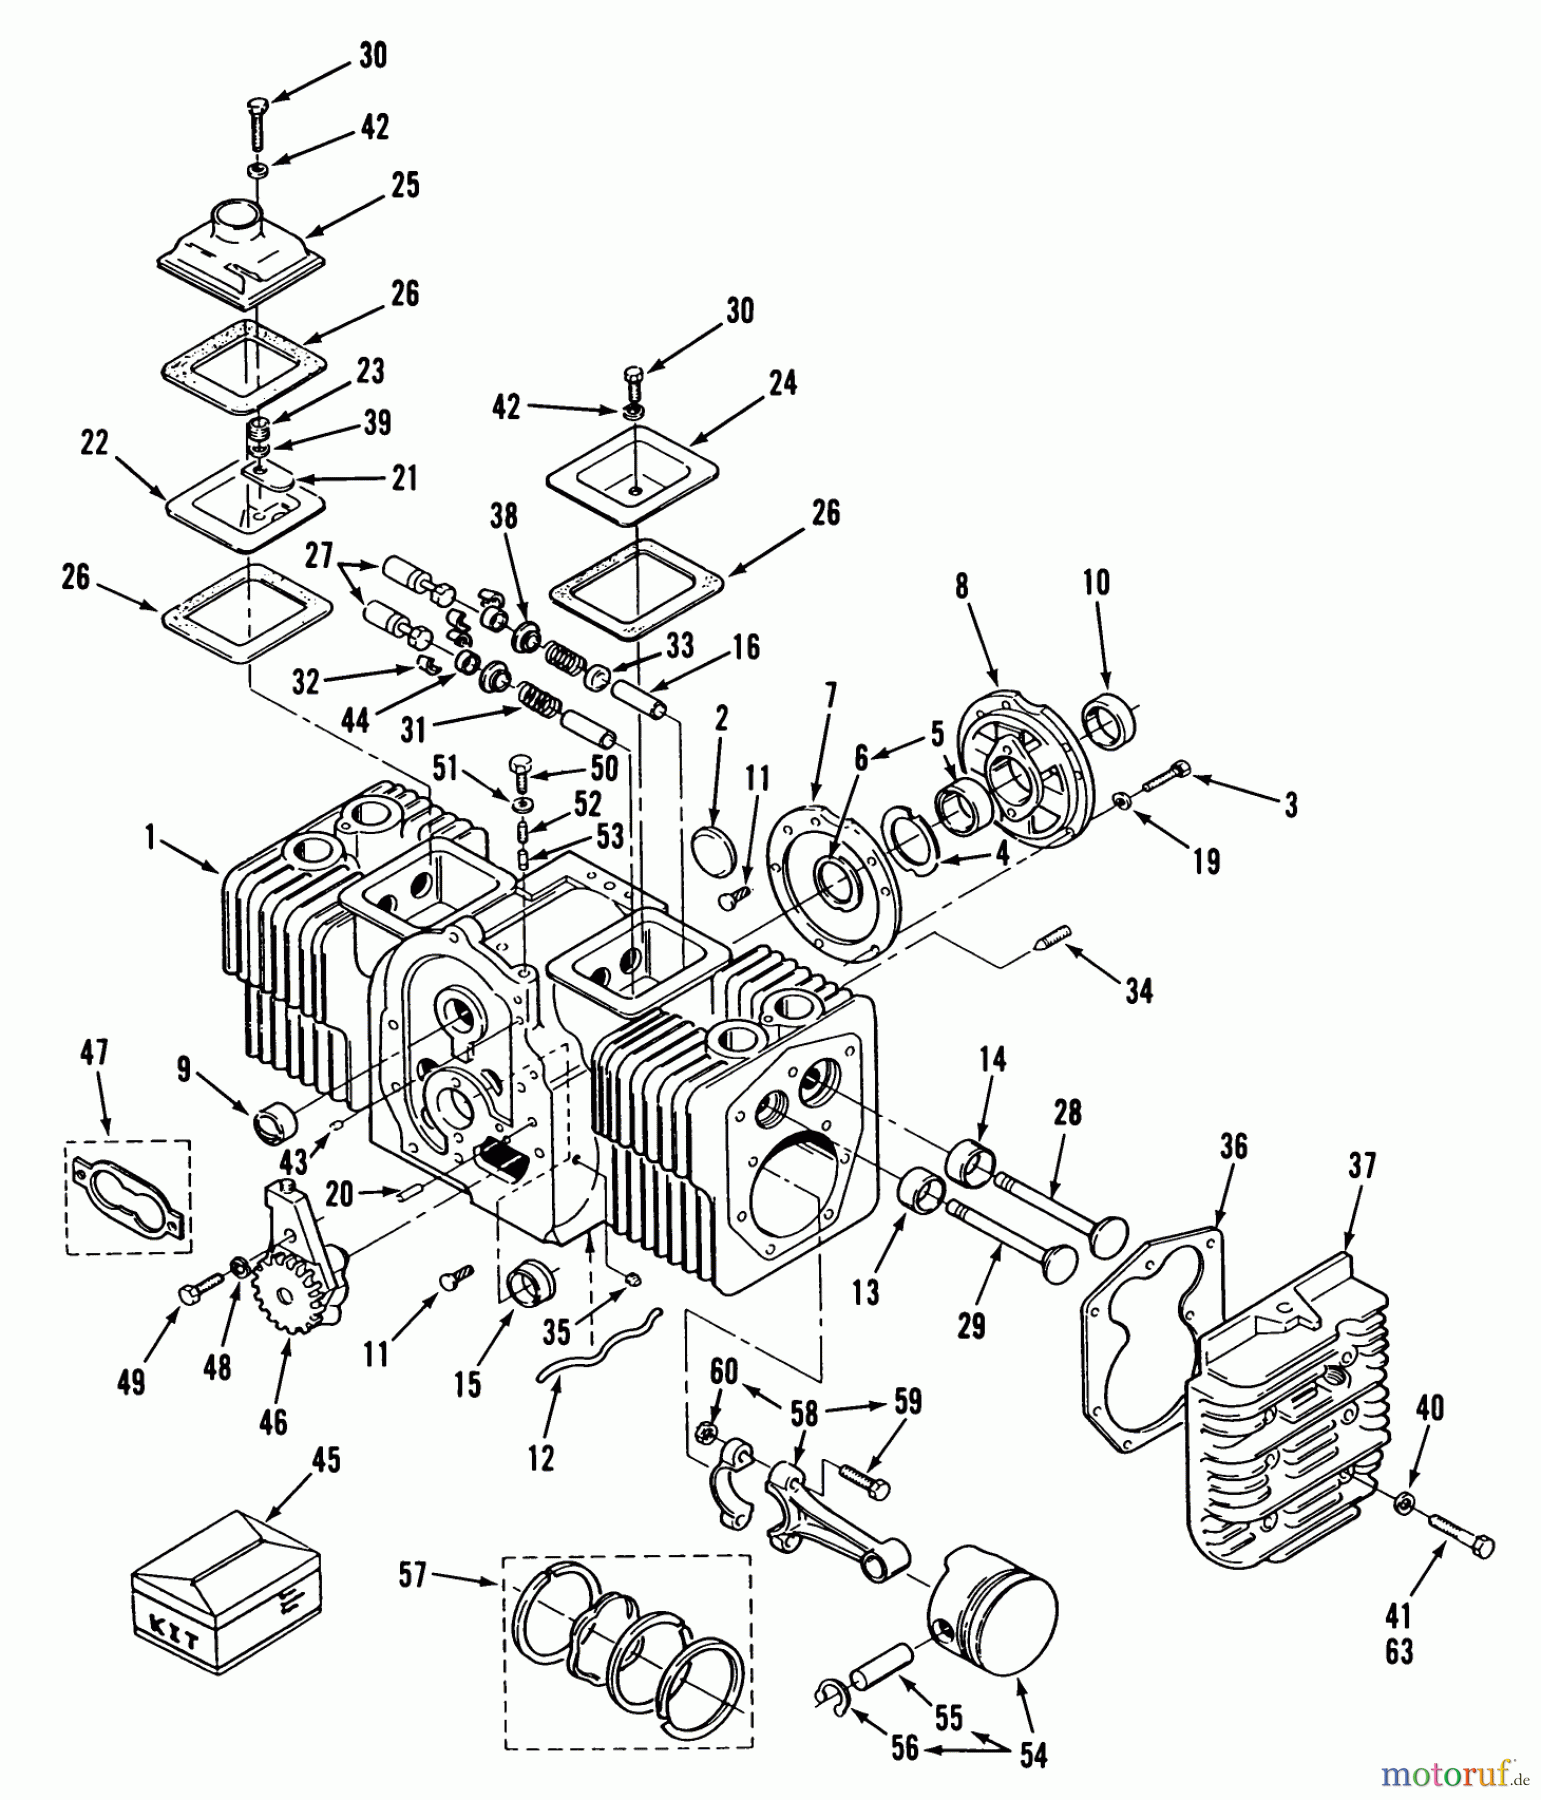  Toro Neu Mowers, Lawn & Garden Tractor Seite 1 31-18OE02 (518-H) - Toro 518-H Garden Tractor, 1989 ENGINE CYLINDER BLOCK